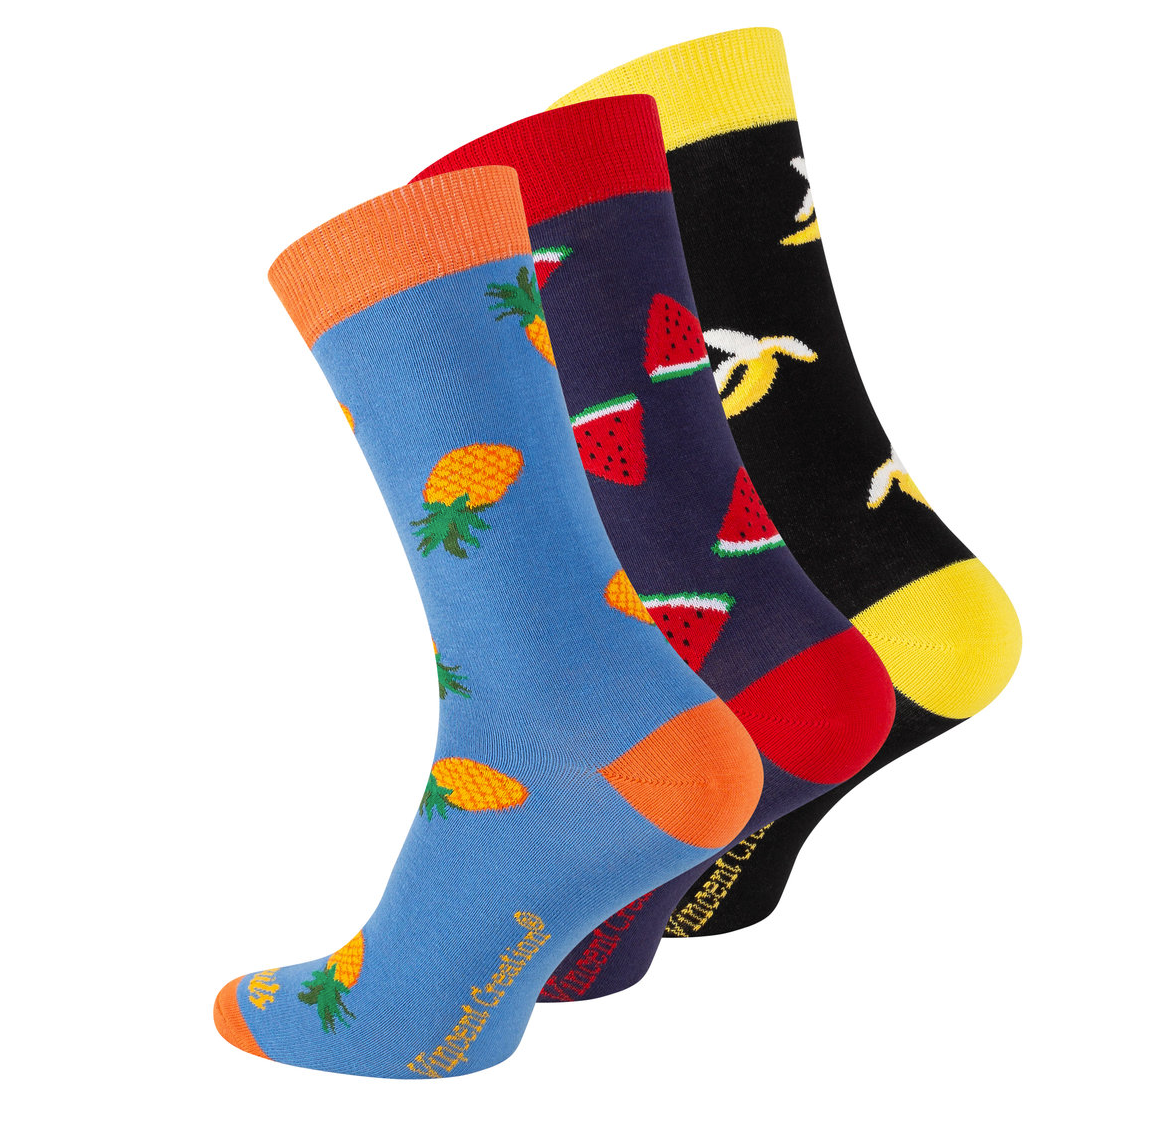 Bunte Socken mit fruchtigen Motiven – ein frischer Hauch von Sommer an Ihren Füßen! Diese verspielten Socken sind das ideale Accessoire für alle, die sich nach einem Hauch von Exotik und Farbe sehnen.